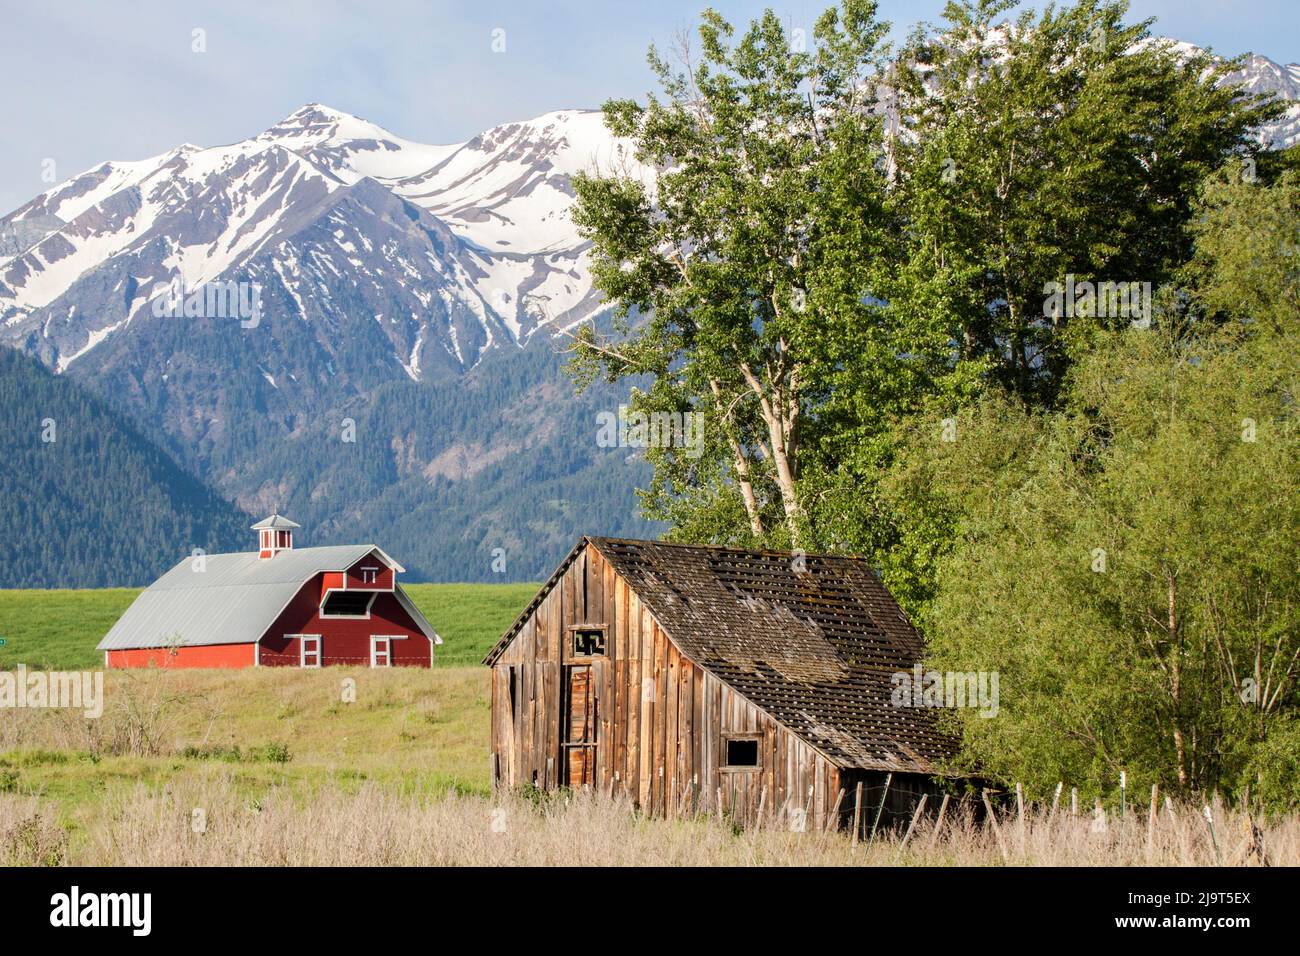 États-Unis, Oregon, Joseph. Grange en bois rouge avec ancien hangar en bois dans le champ avec les montagnes Wallowa au loin. Banque D'Images